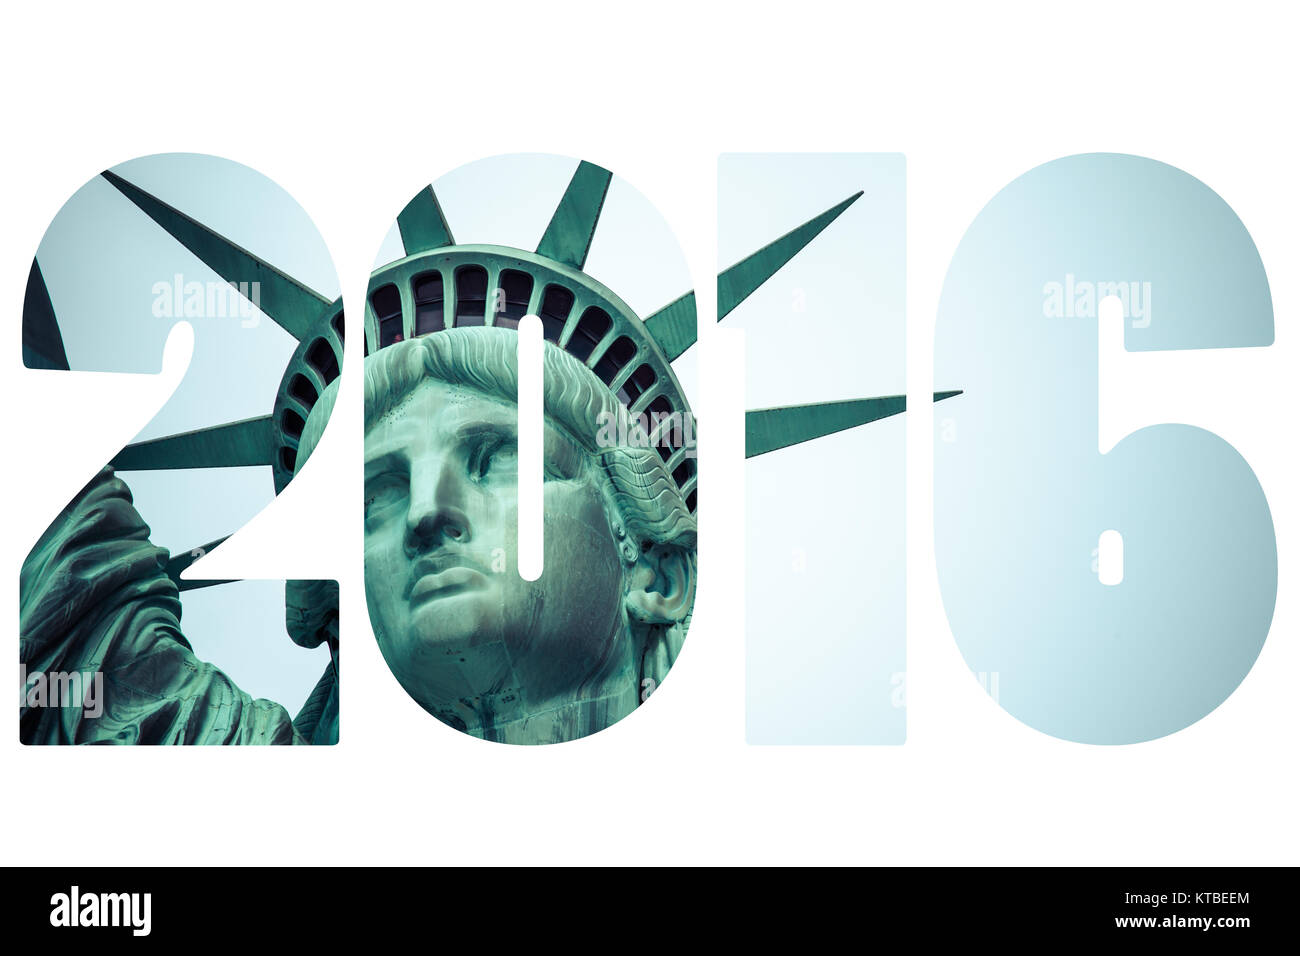 Wort wahl Abstimmung 2016 über die Freiheitsstatue in New York City Stockfoto